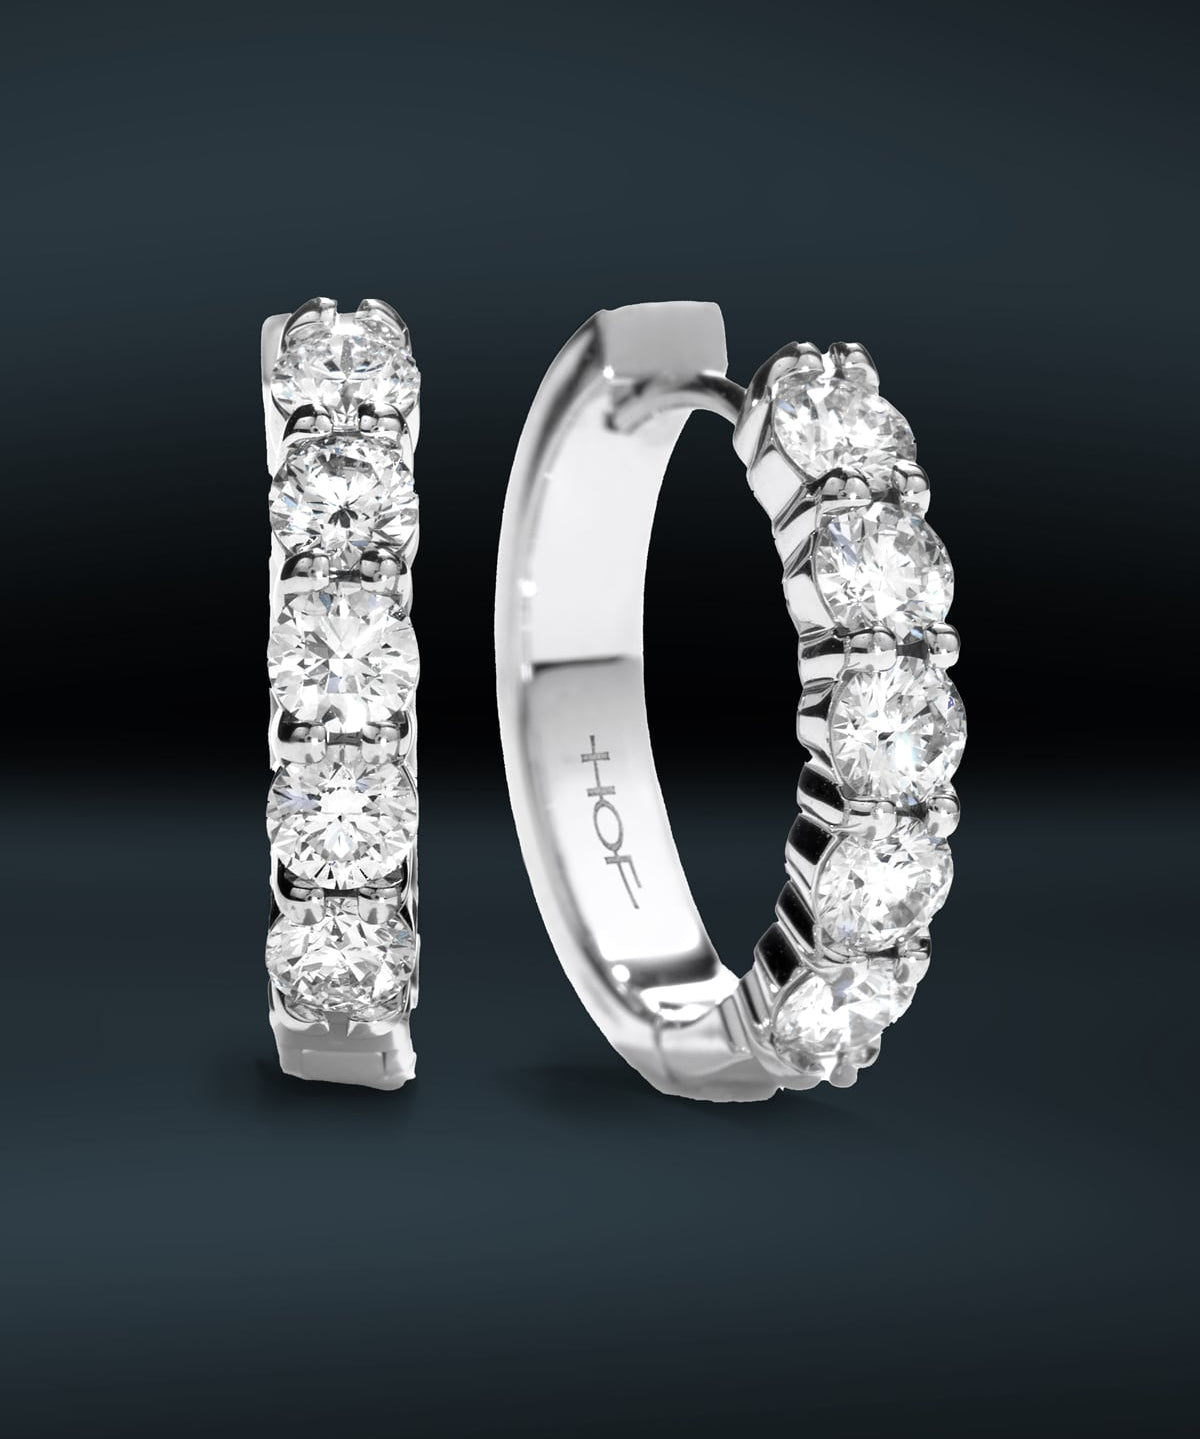 Diamond hoop earrings available at LeGassick Diamonds & Jewellery Gold Coast, Australia.